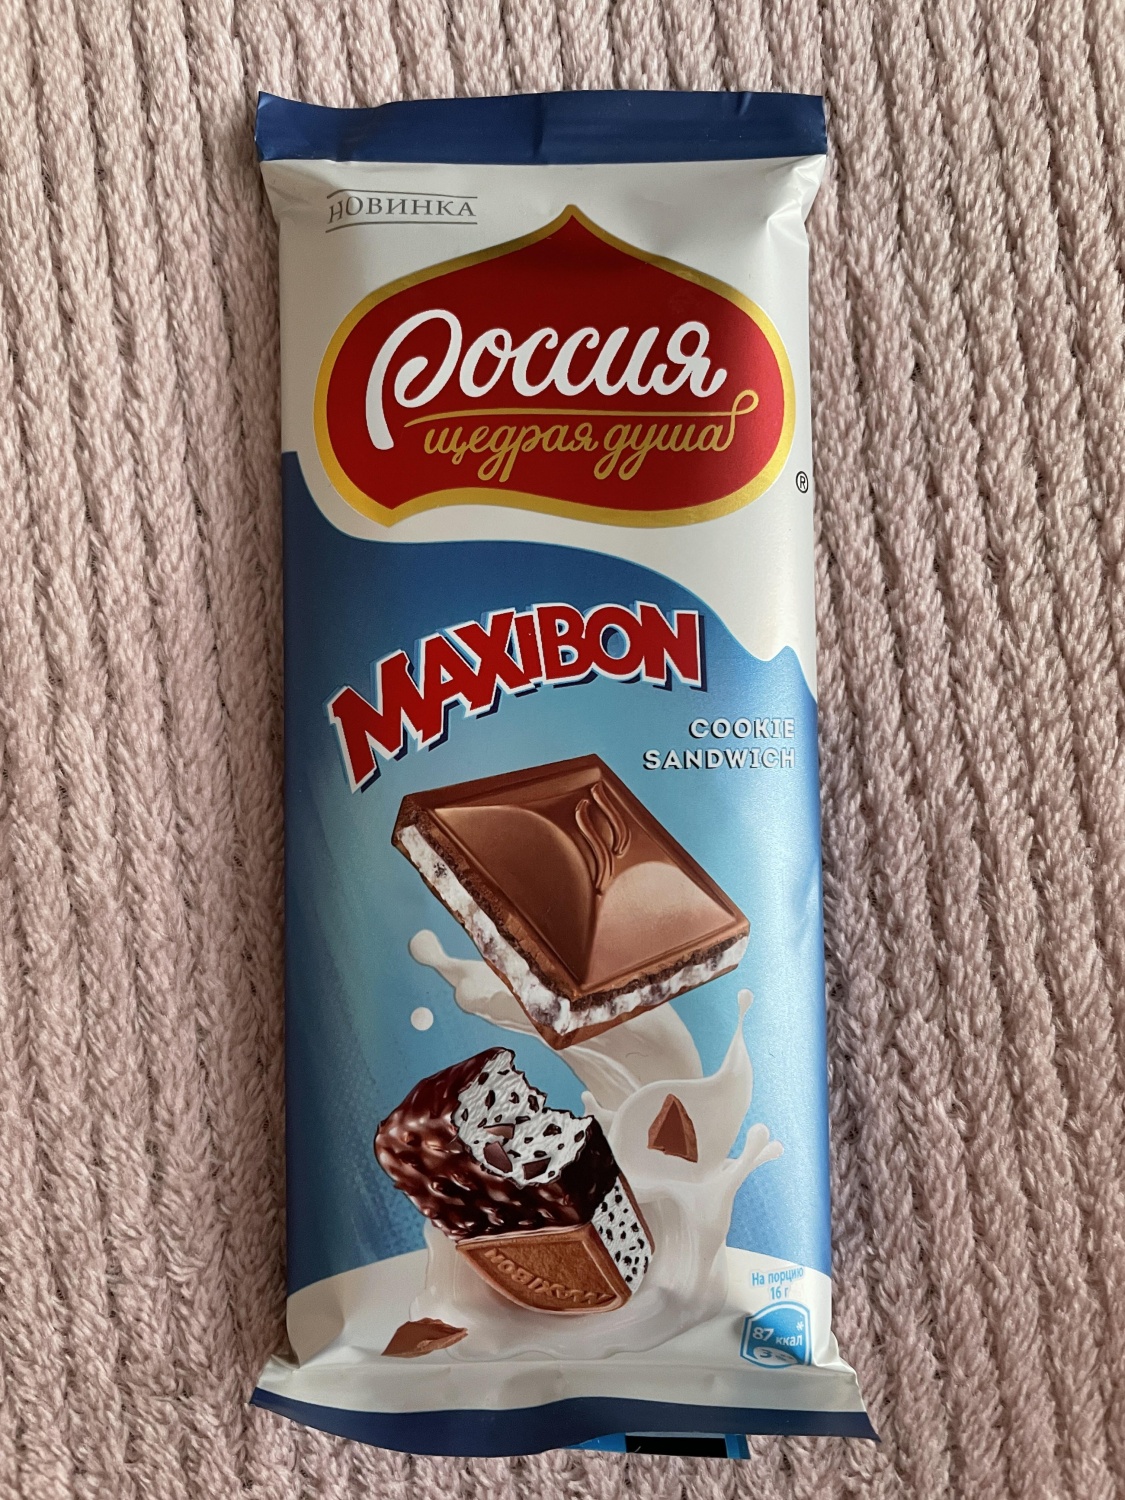 Шоколад Россия щедрая душа со вкусом Максибон